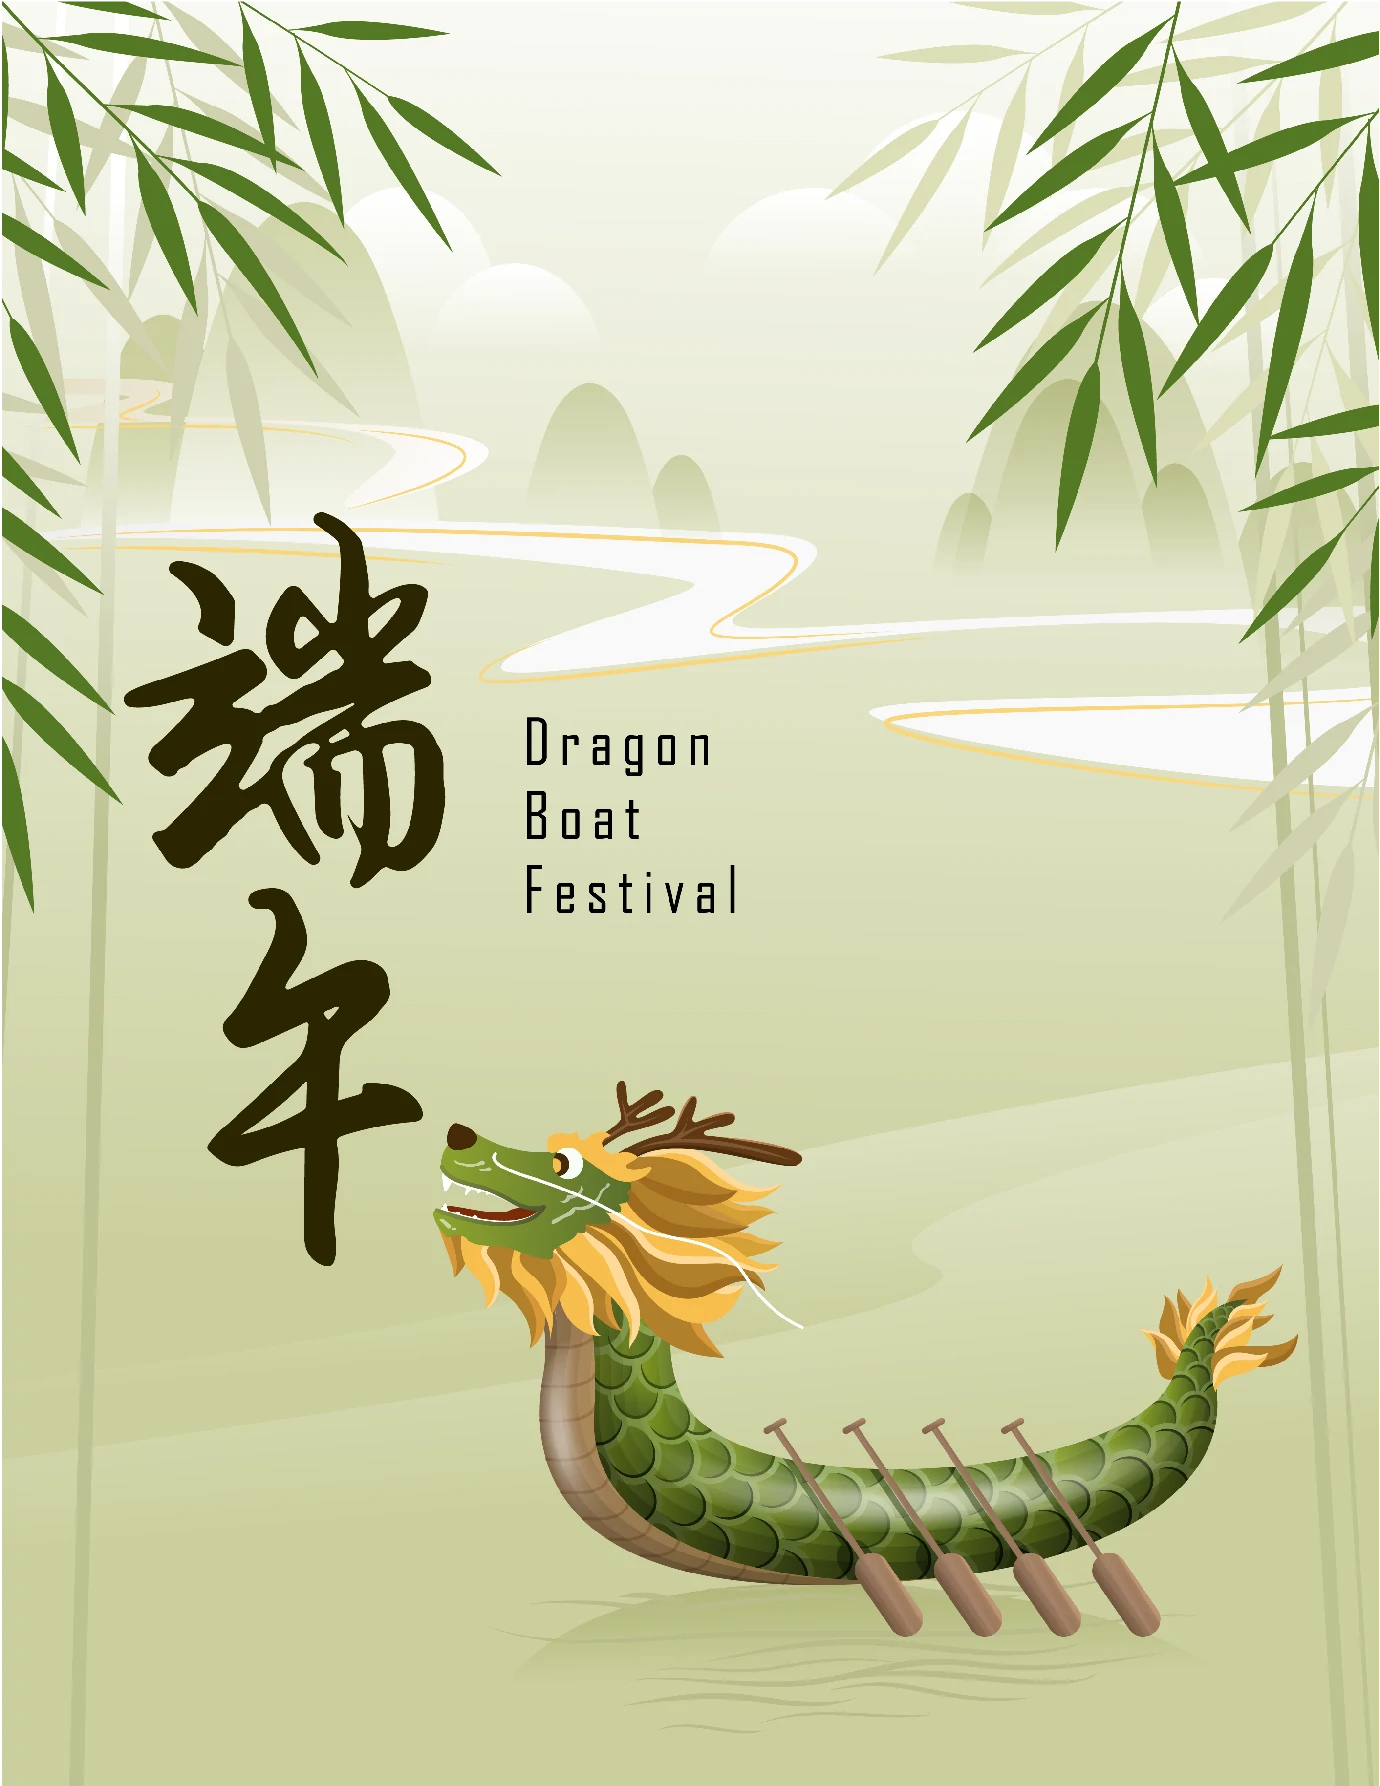 中国传统节日端午节端午安康赛龙舟包粽子插画海报AI矢量设计素材【001】